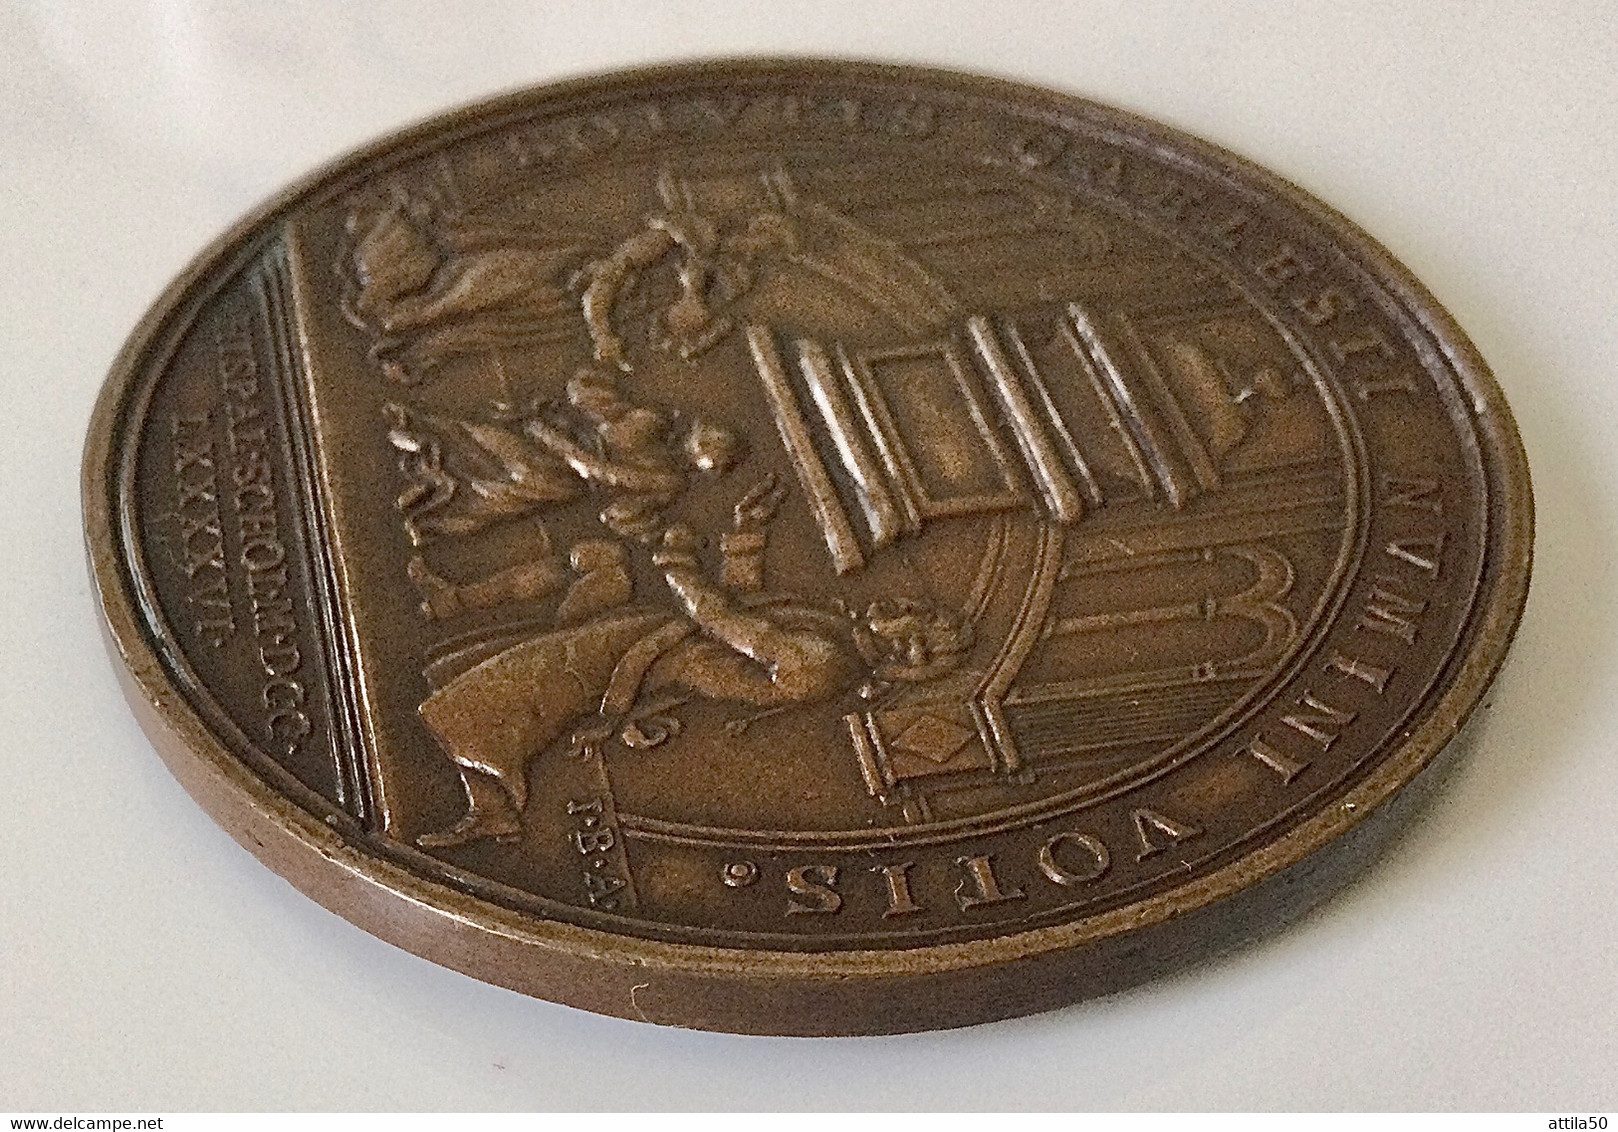 Carolus IV di Spagna - Rara e bella medaglia di bronzo del 1796, retro i sovrani fanno voti per il figlio Ferdinando.